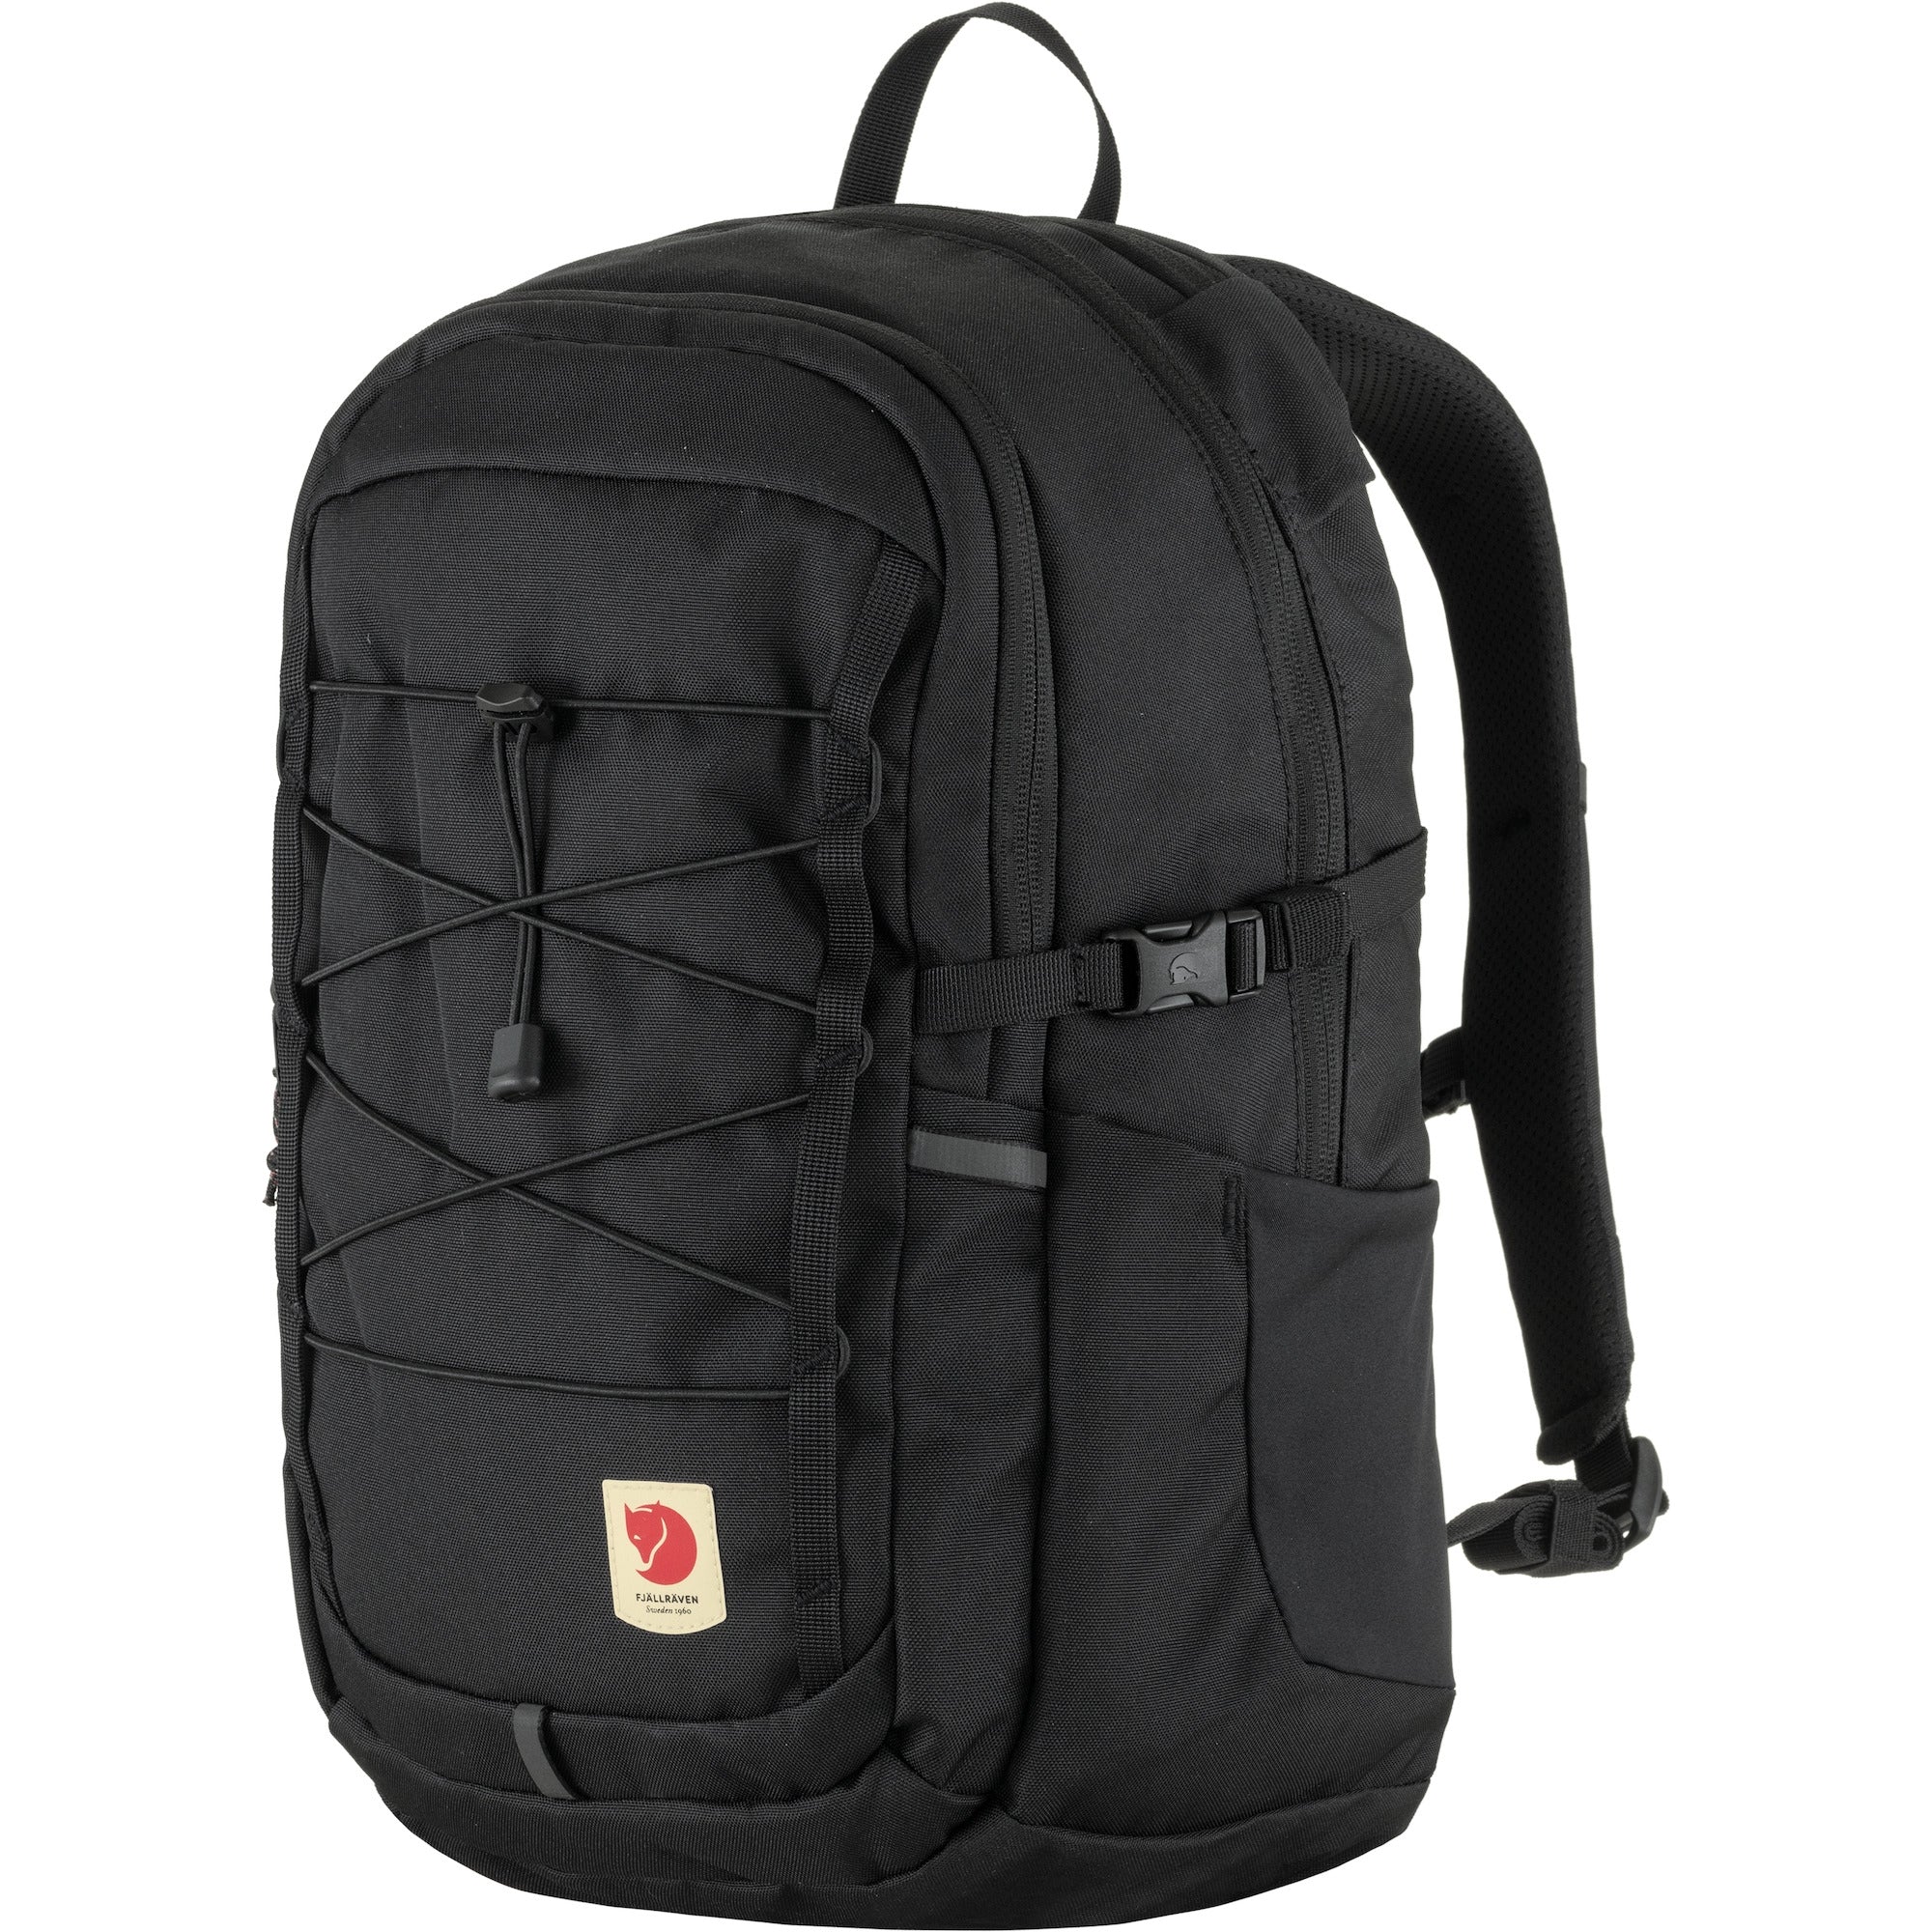 Skule 20 Backpack